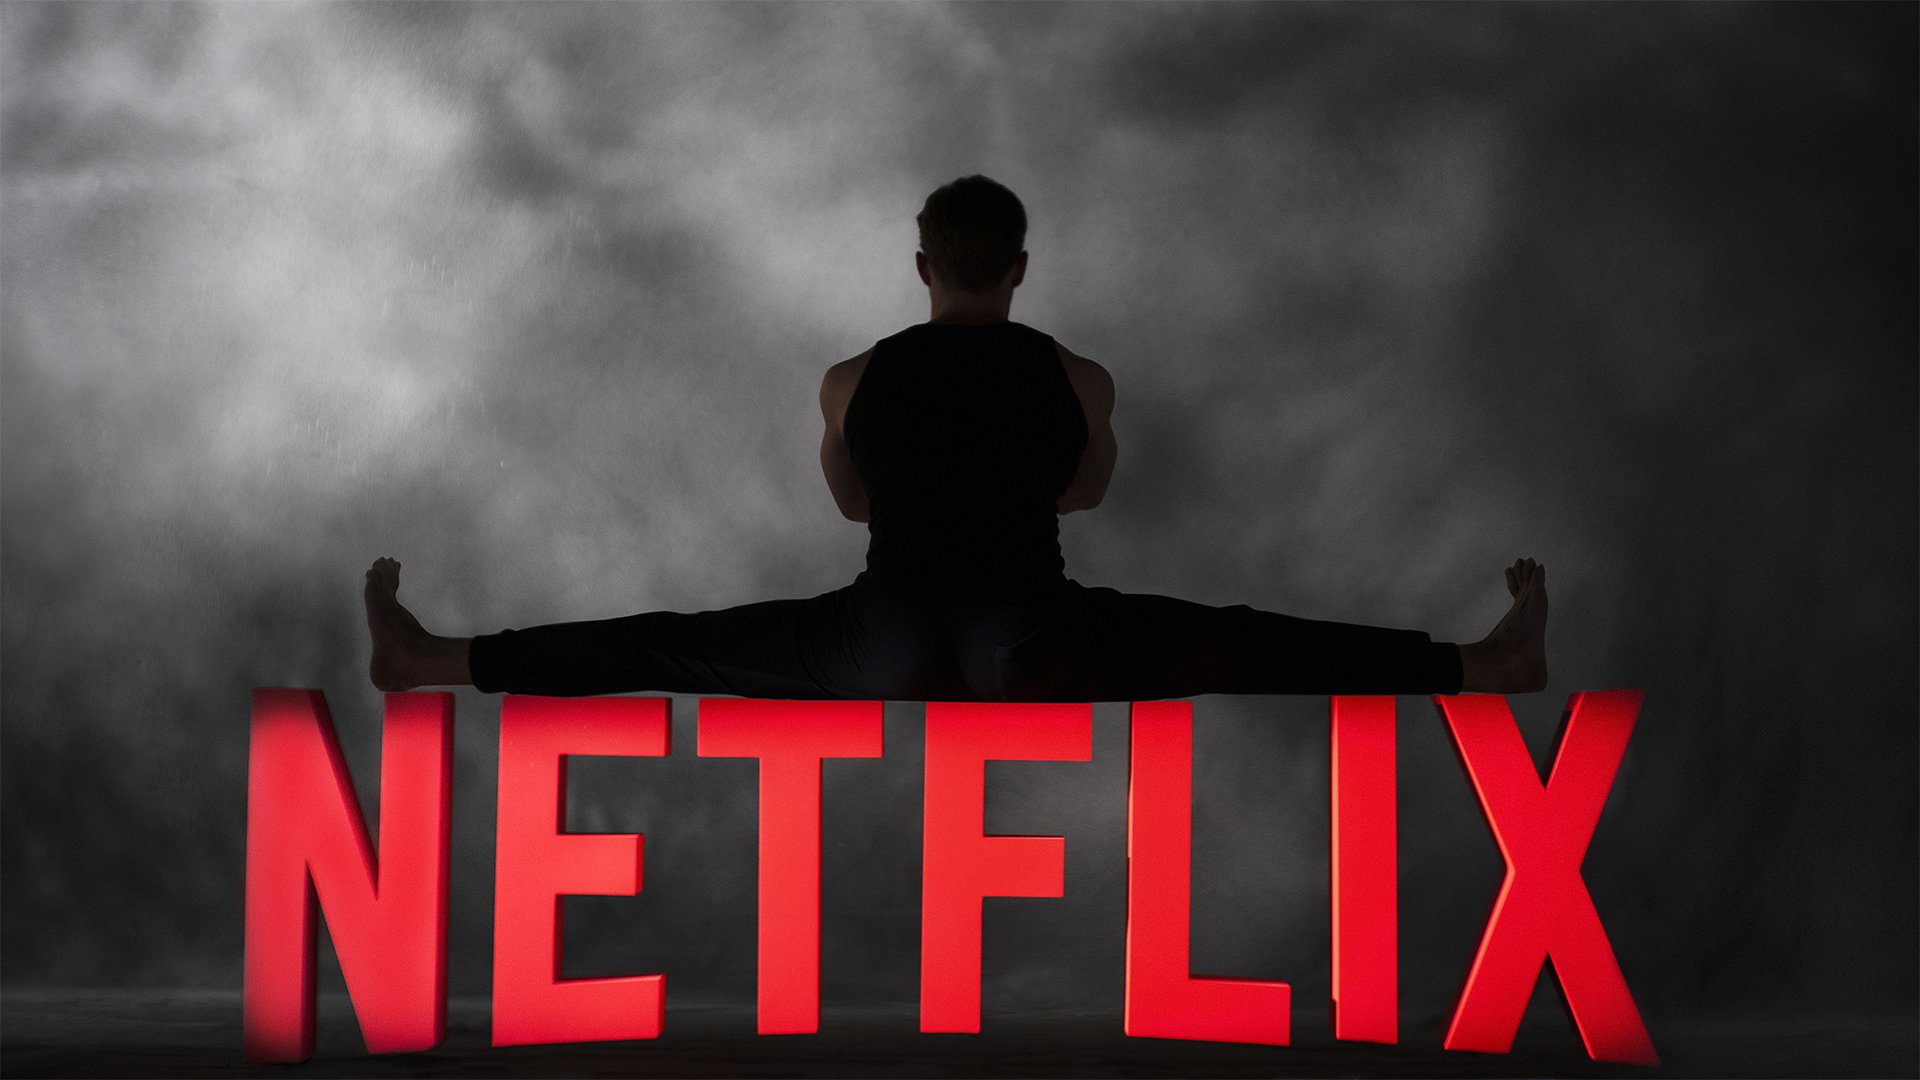 Le Dernier mercenaire : Netflix annonce un film avec Jean-Claude Van Damme